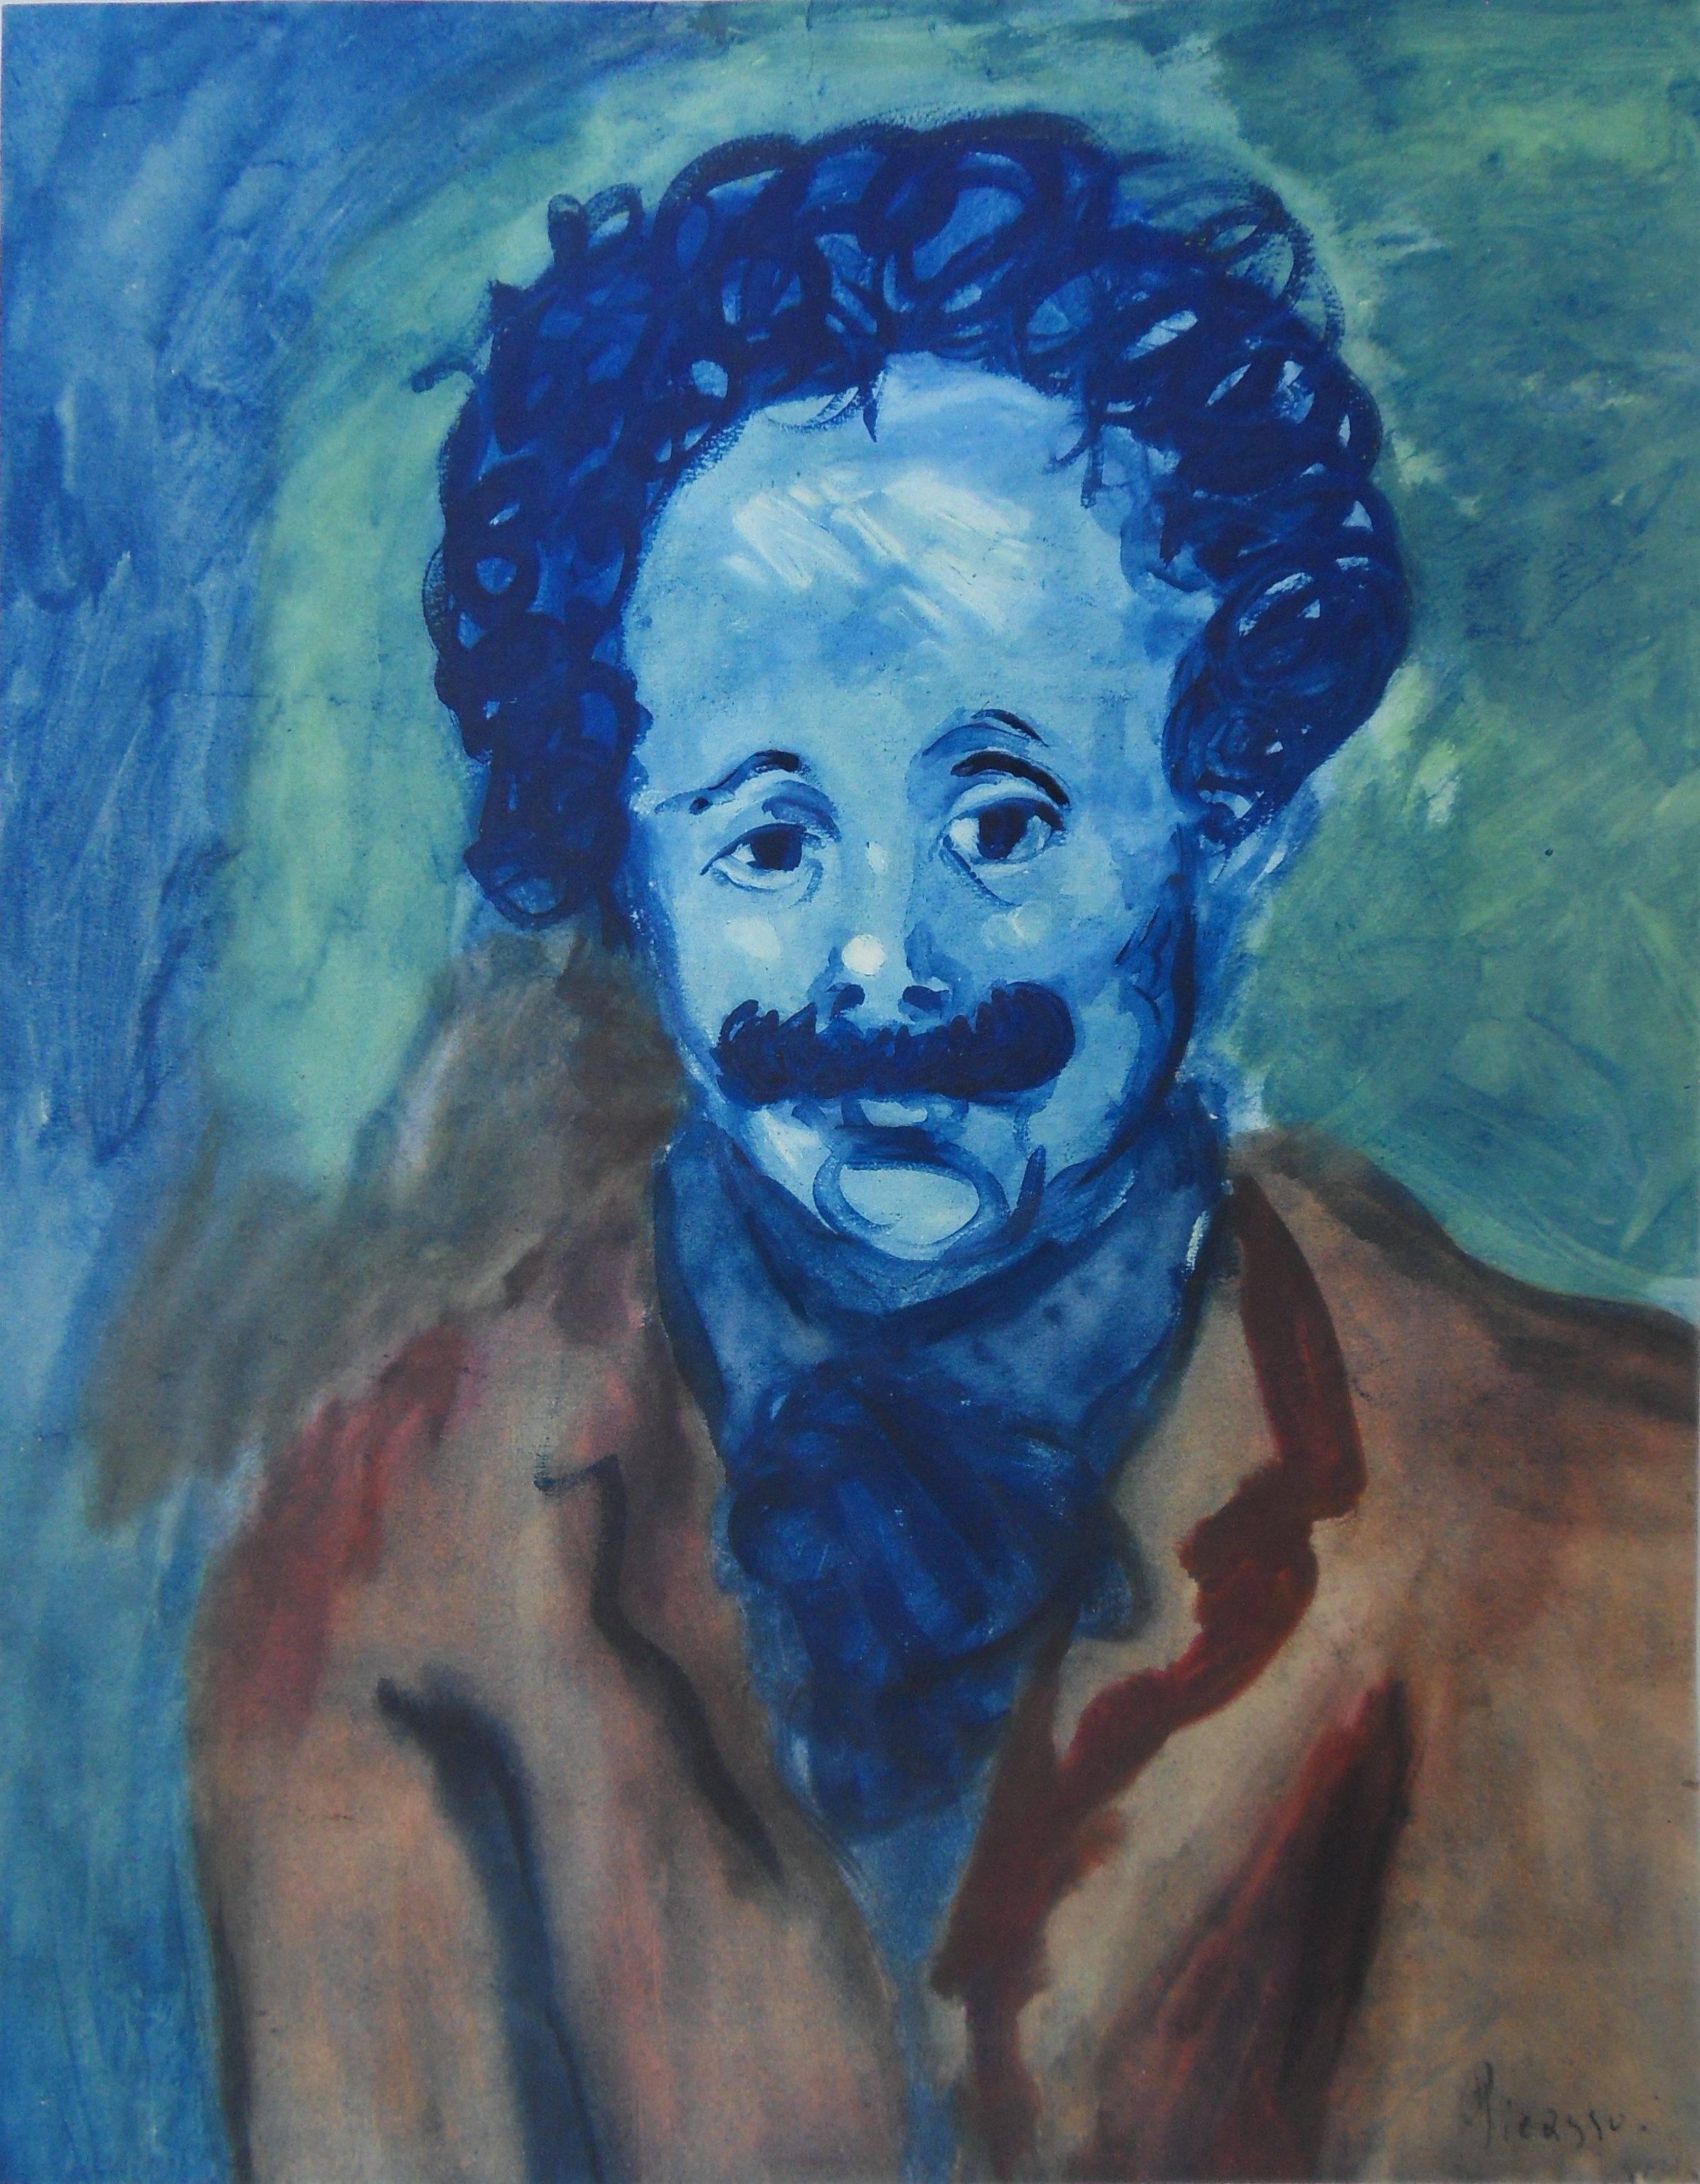 Unknown Portrait Print - Pablo PICASSO (after) : Man With Mustache - pochoir - 500 copies - 1963